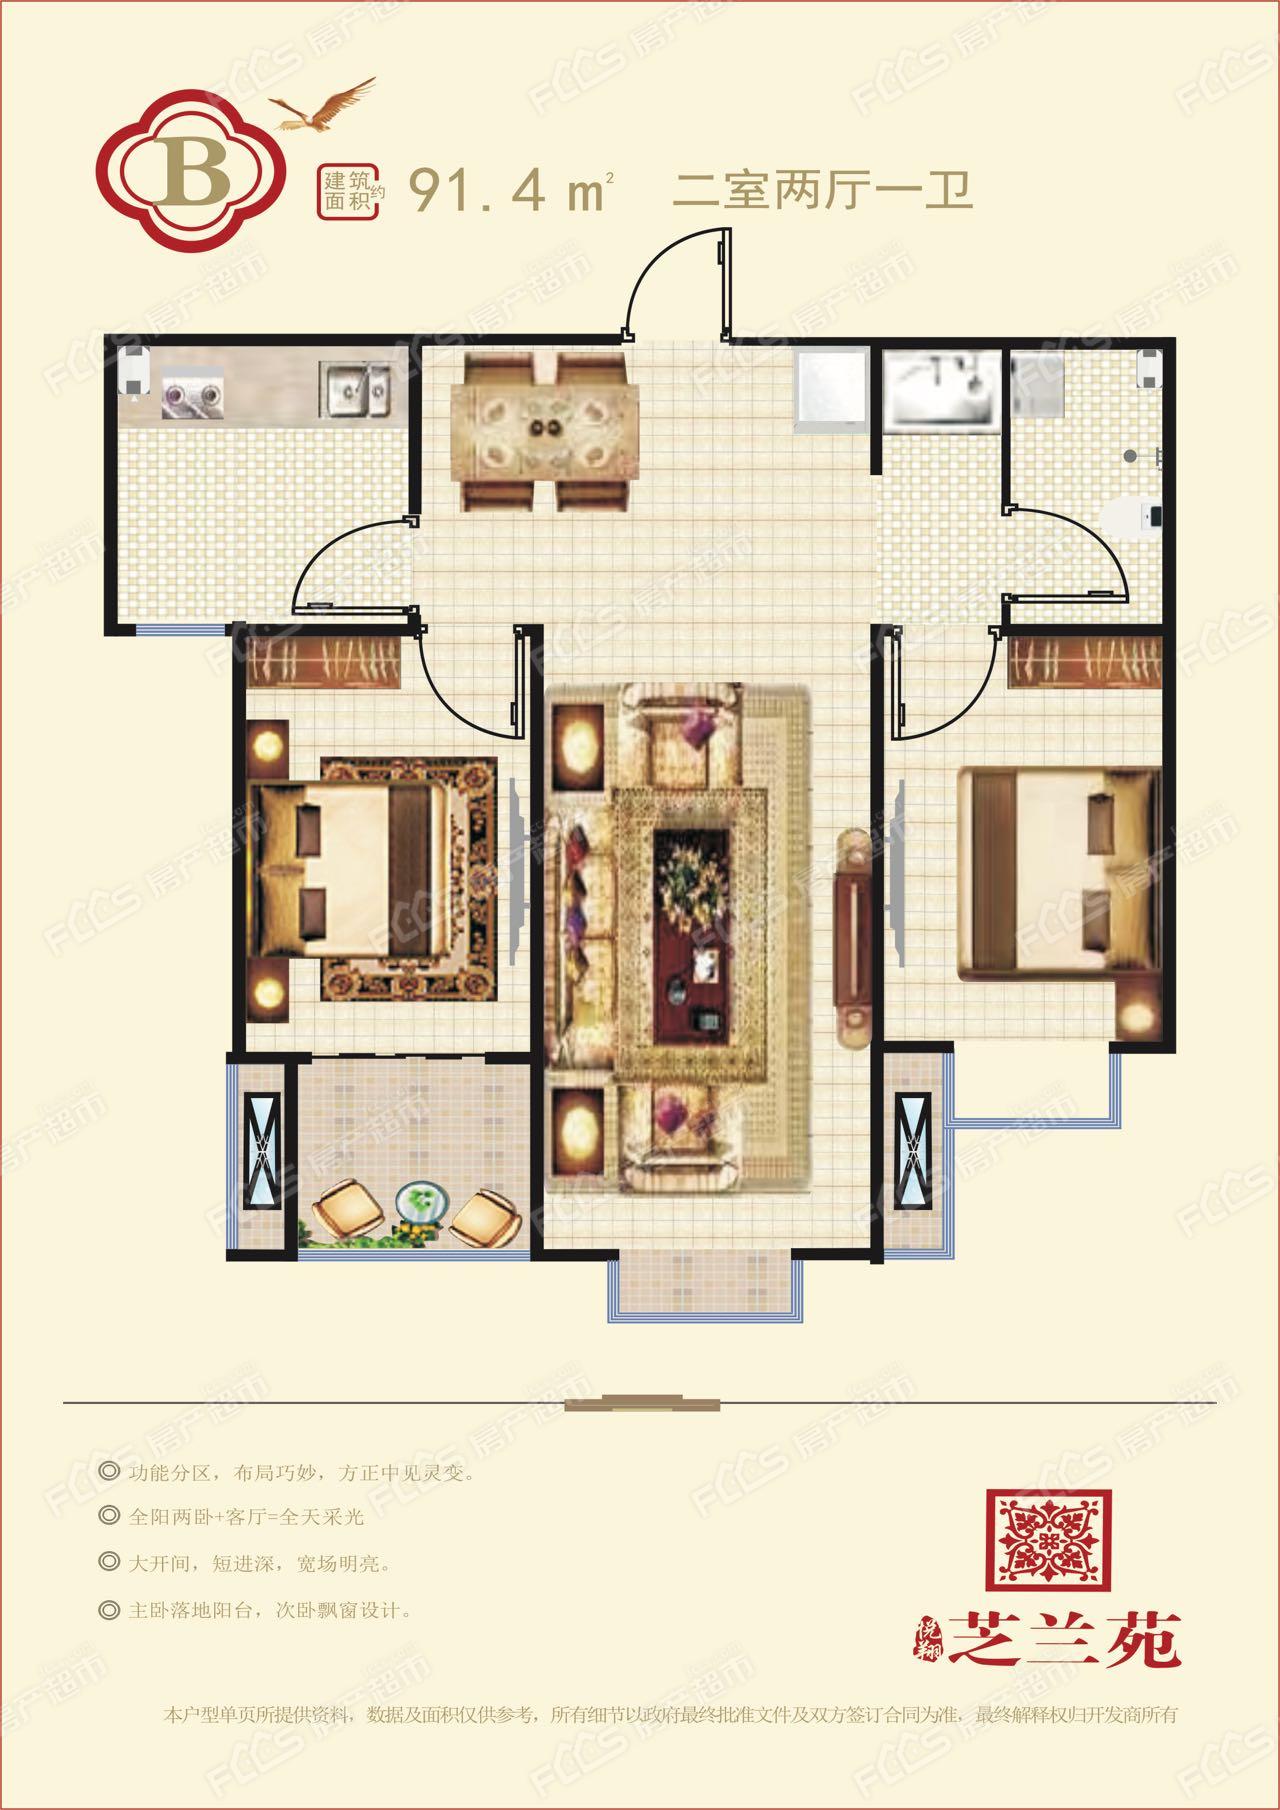 悦翔·芝兰苑高层户型图91.4平米两室两厅一卫